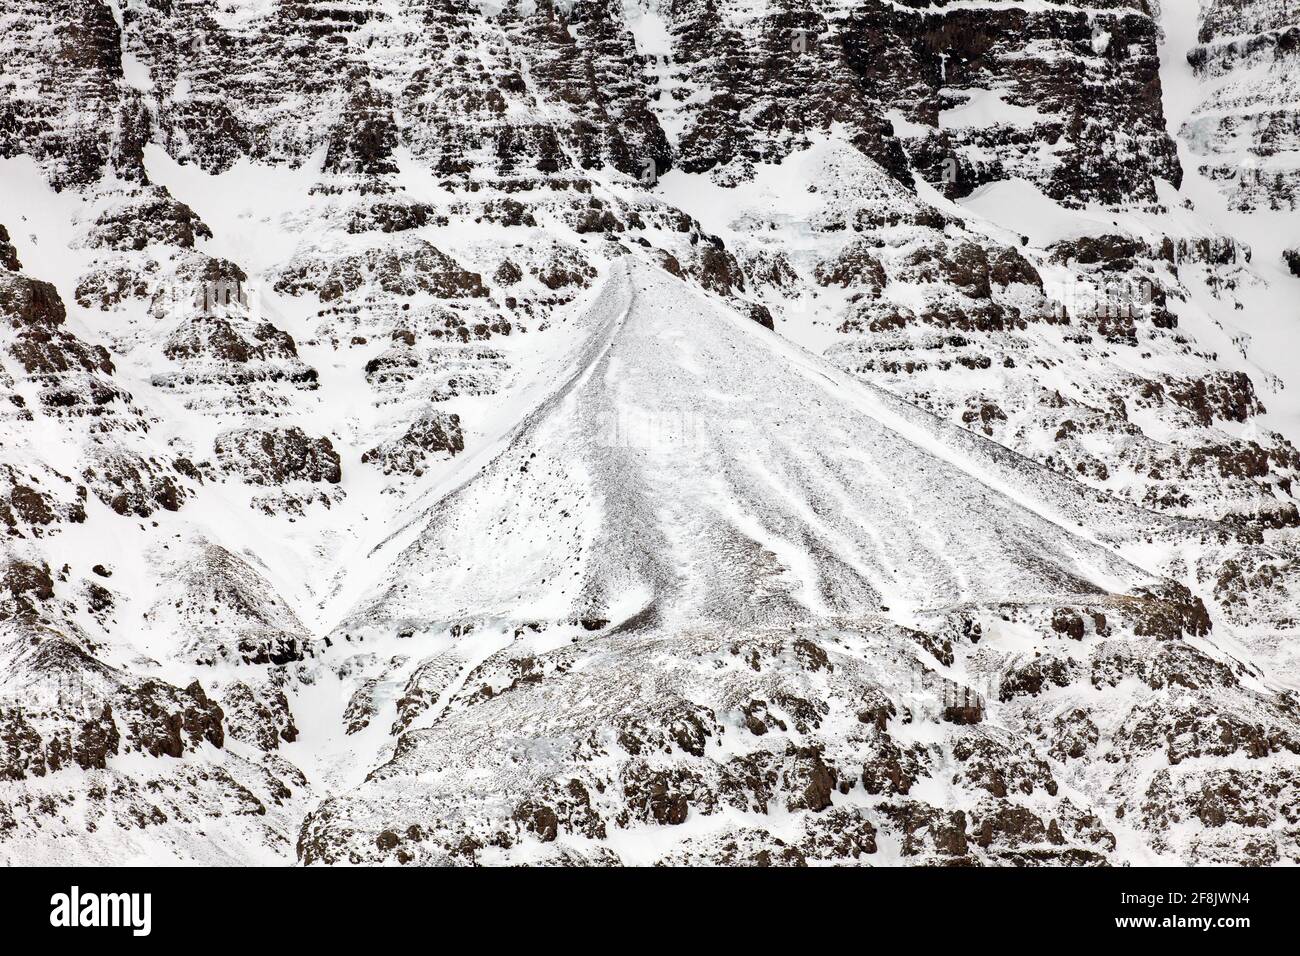 En hiver, à Snaefellsnes, dans l'ouest de l'Islande, la neige couvrait le cône de talus et les cries, dépôt de pierres à la base de la pente de montagne Banque D'Images